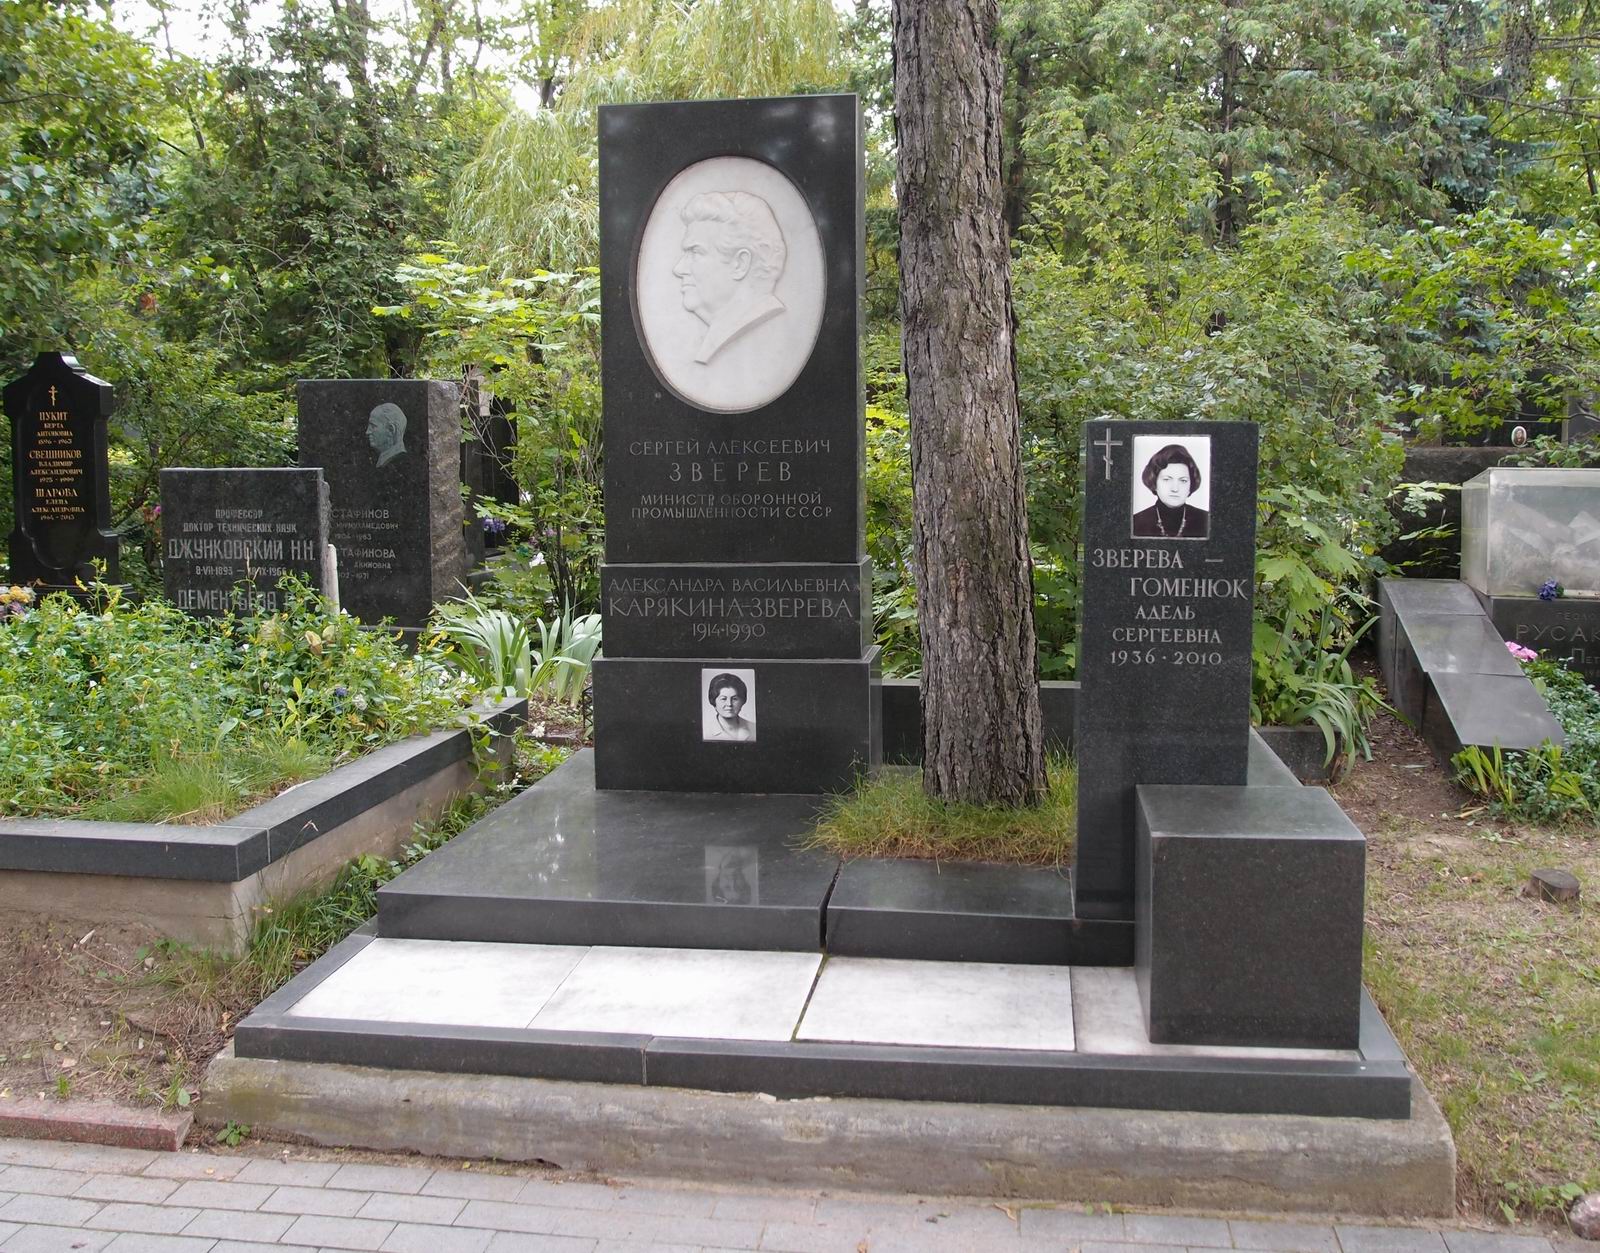 Памятник на могиле Зверева С.А. (1912-1978), ск. Б.Едунов, арх. С.Кучанов, на Новодевичьем кладбище (8-36-3). Нажмите левую кнопку мыши чтобы увидеть фрагмент памятника.